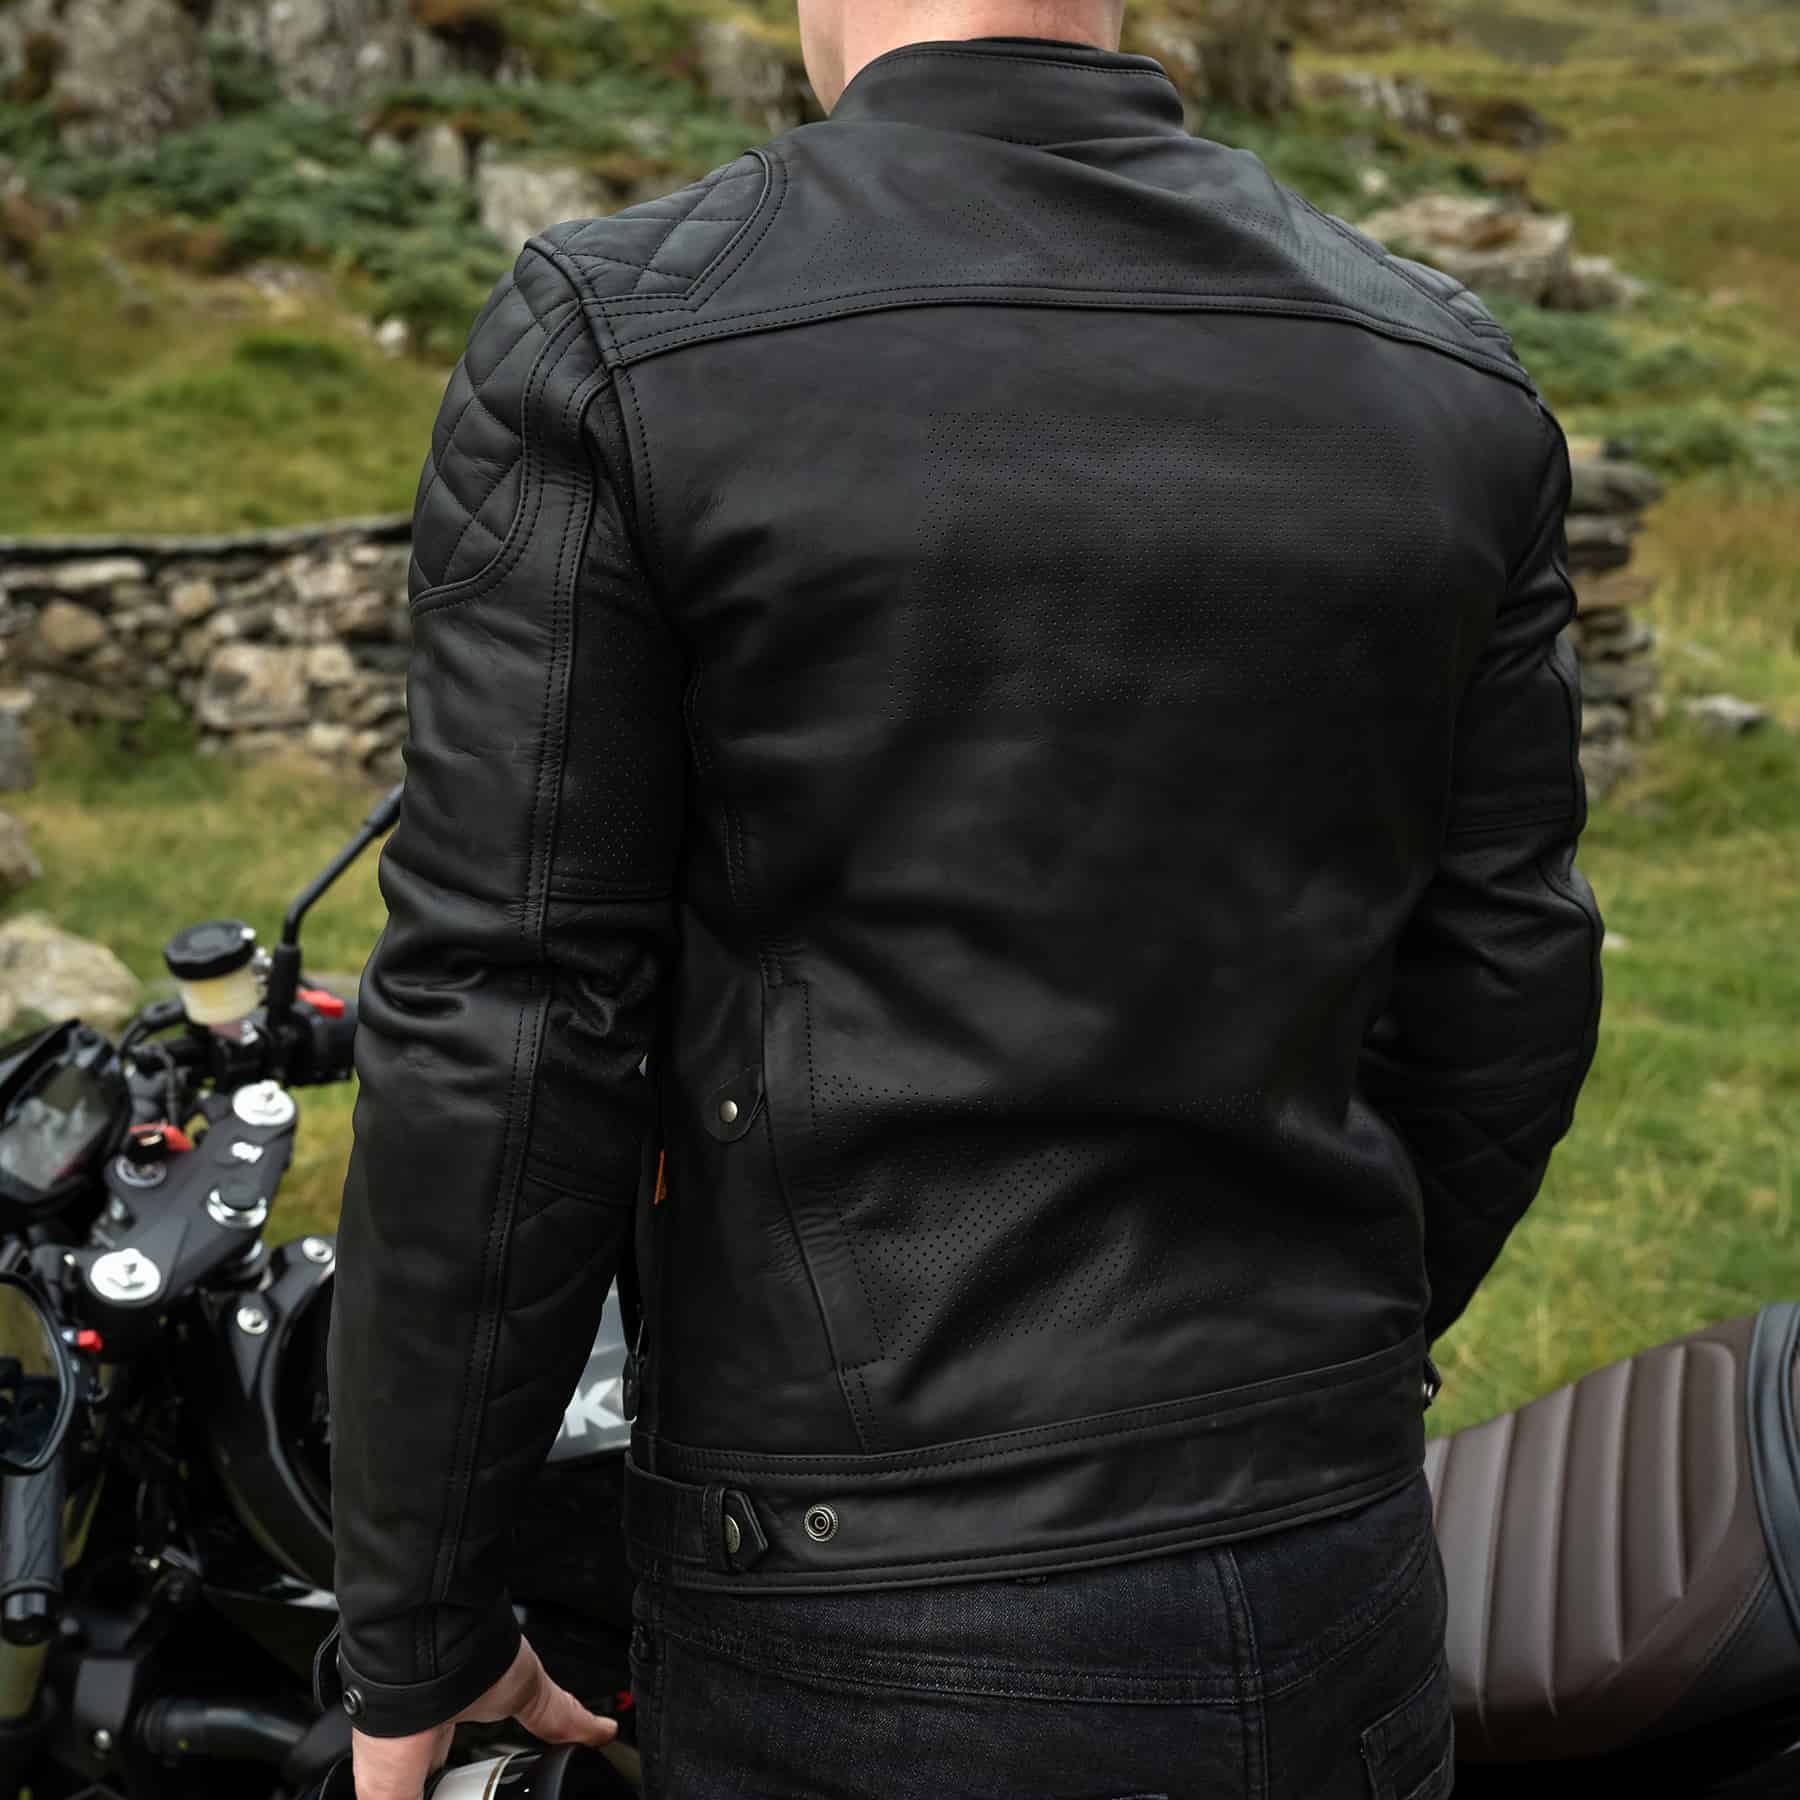 ol Bobber', Black Classic Leather Motorbike Jacket